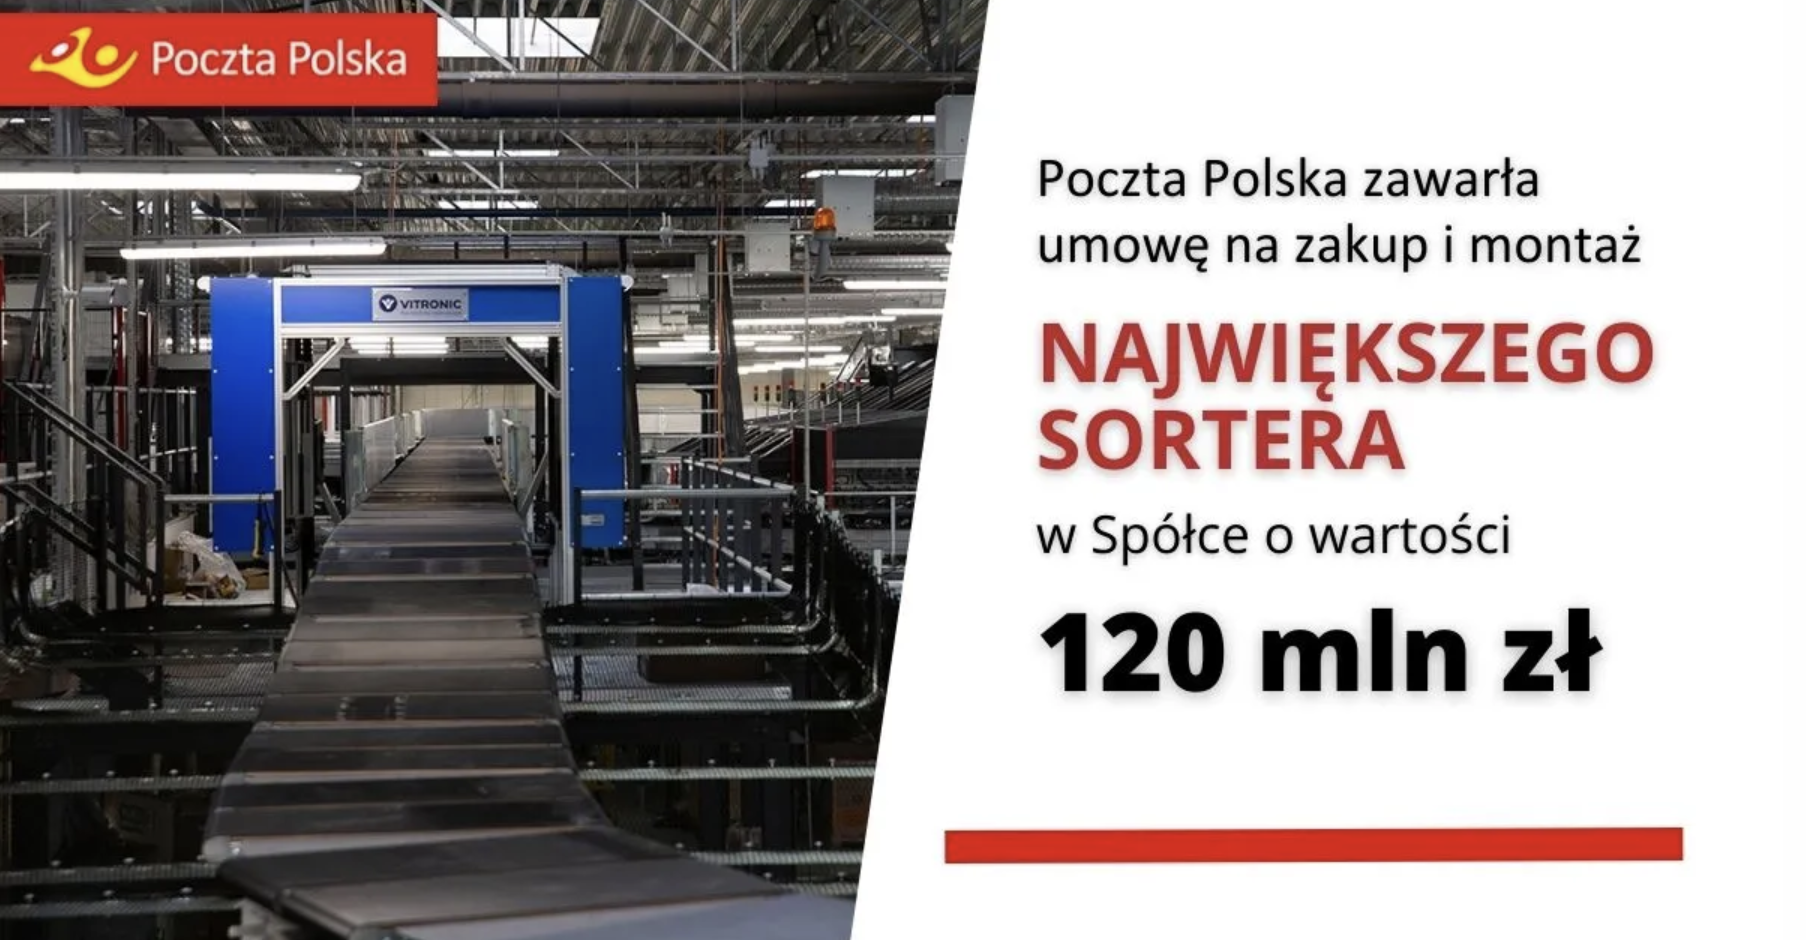 Poczta Polska zawarła umowę na zakup i montaż największego sortera w Spółce o wartości 120 mln zł